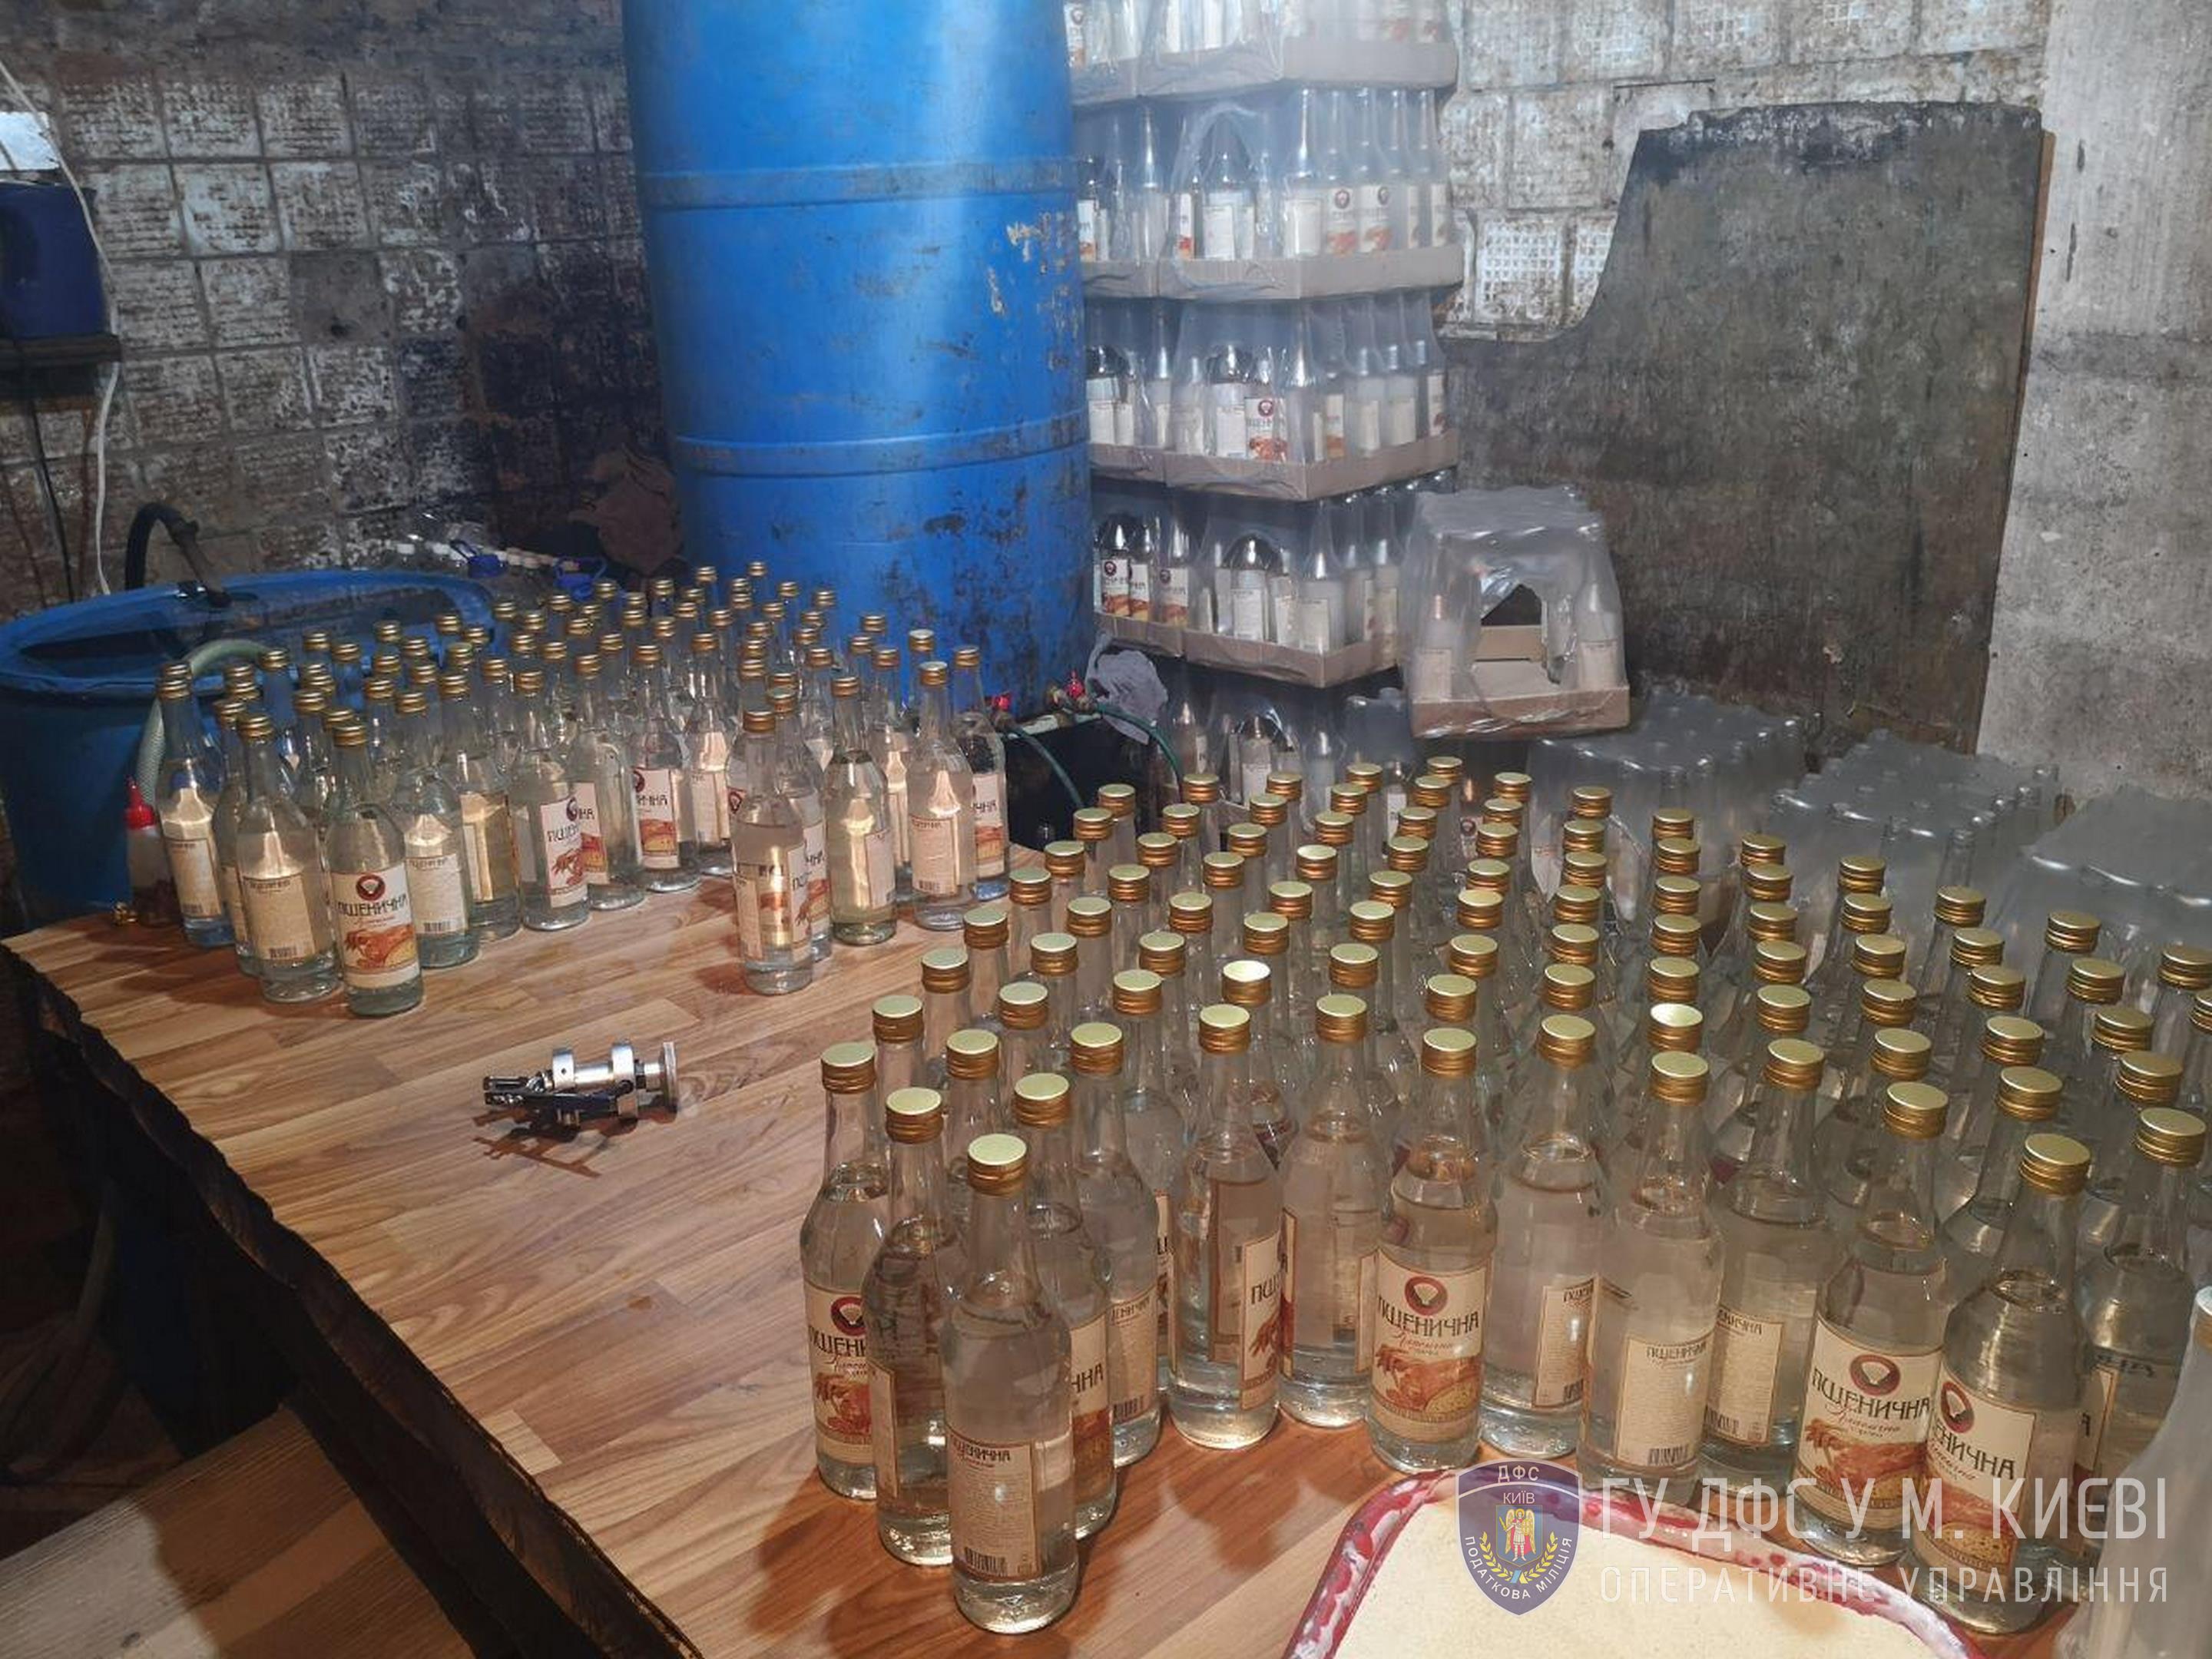 2,3 тис. літрів спирту та 1 тис. літрів фальсифікованої горілки виявили в підпільному цеху Києва (+фото)